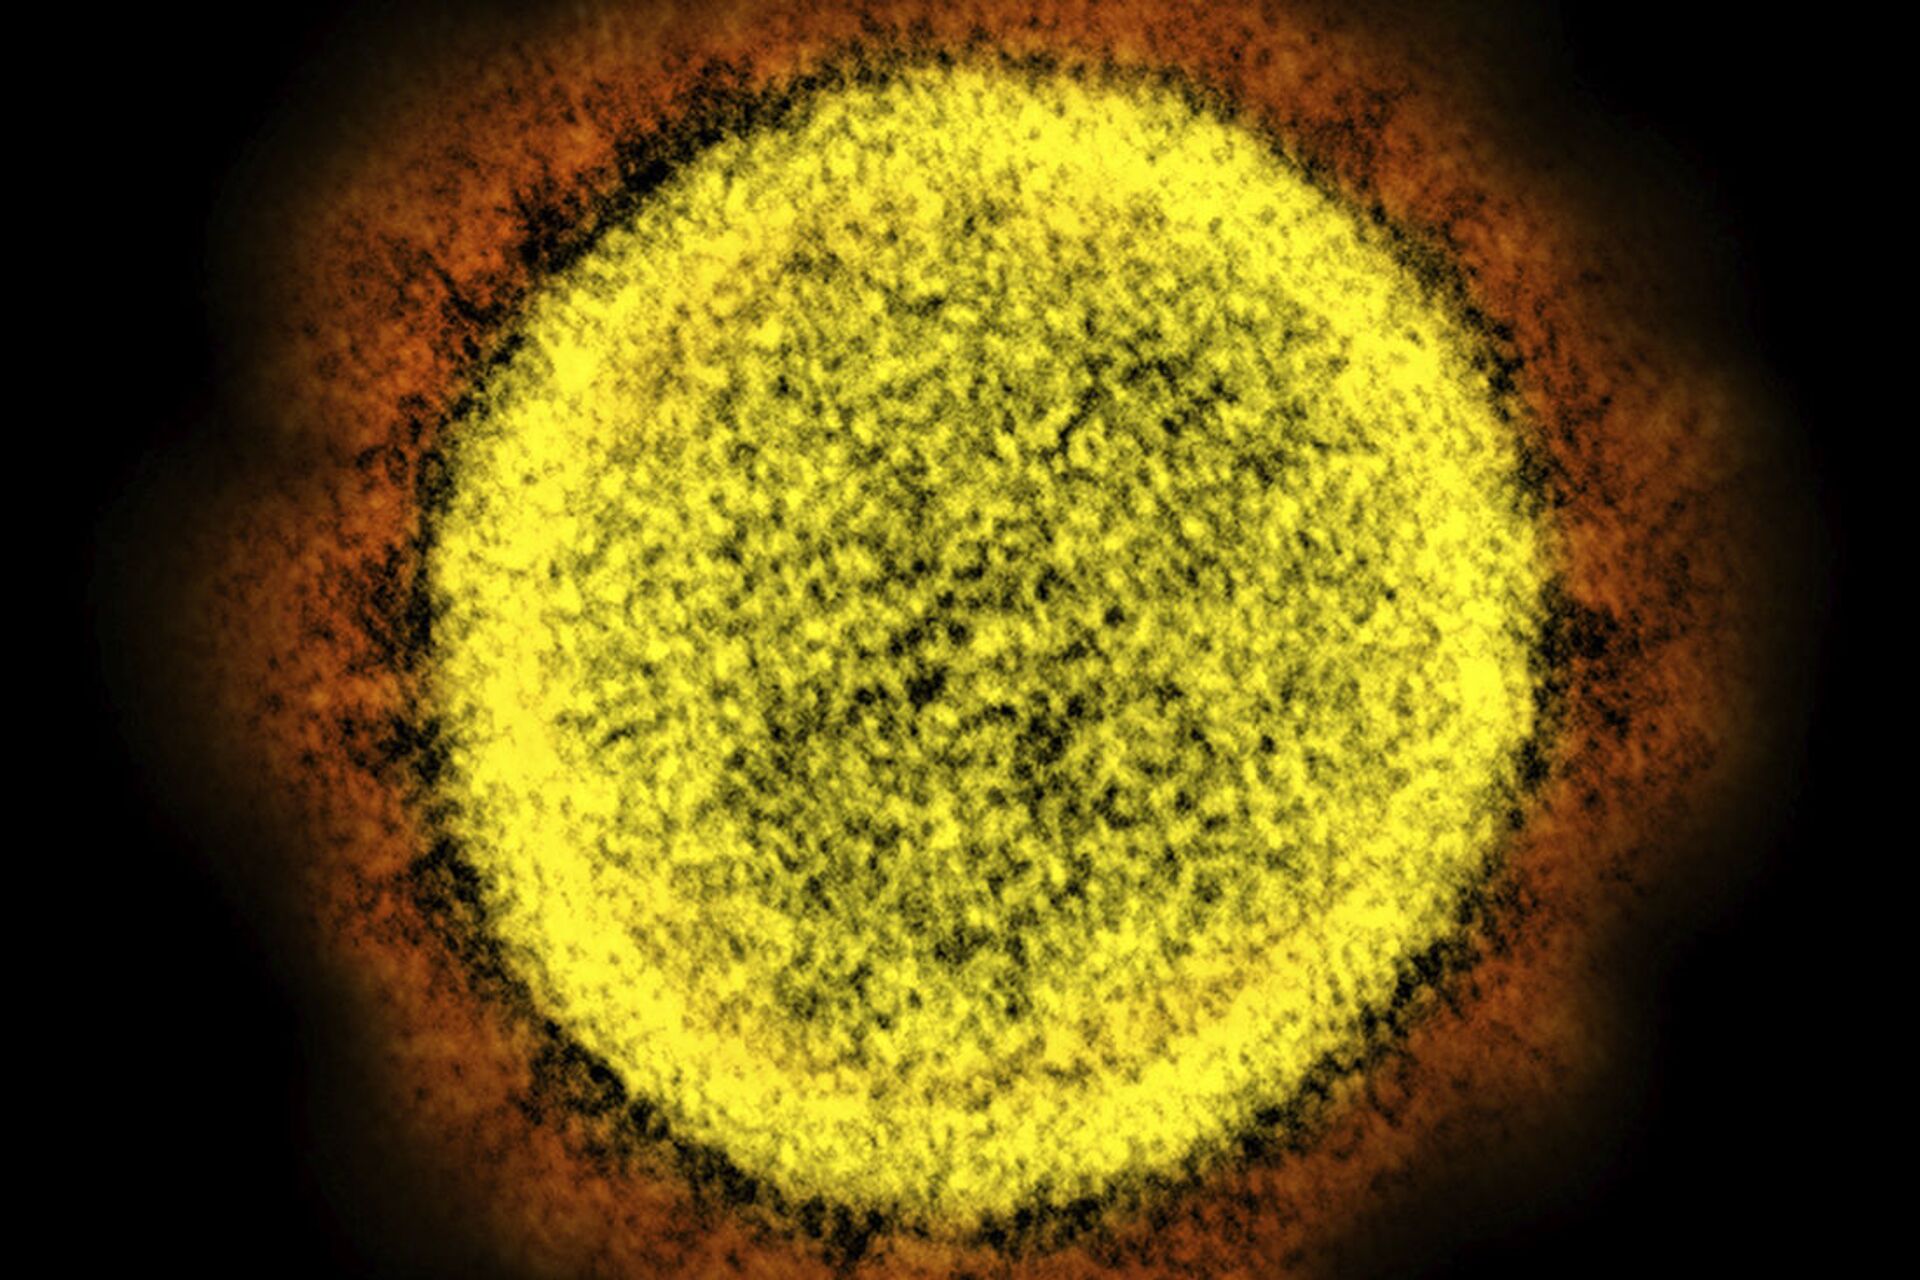 Descobertos na China 4 novos coronavírus aparentados com SARS-CoV-2 - Sputnik Brasil, 1920, 12.06.2021